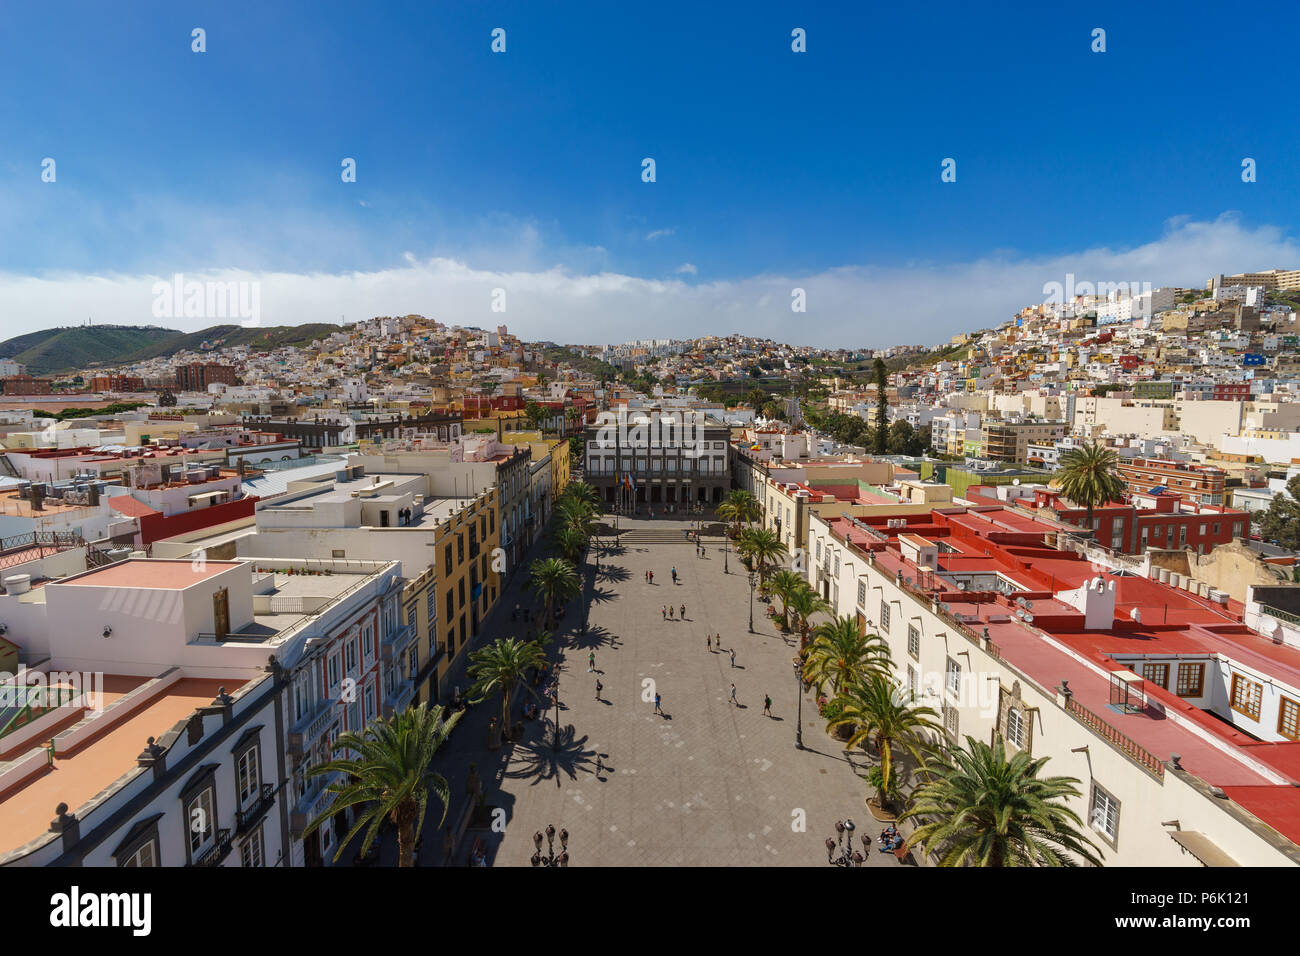 Vista panorámica de la Plaza Mayor de Santa Ana y coloridas estructuras residenciales de la ciudad de Las Palmas, Gran Canaria, Islas Canarias, España Foto de stock